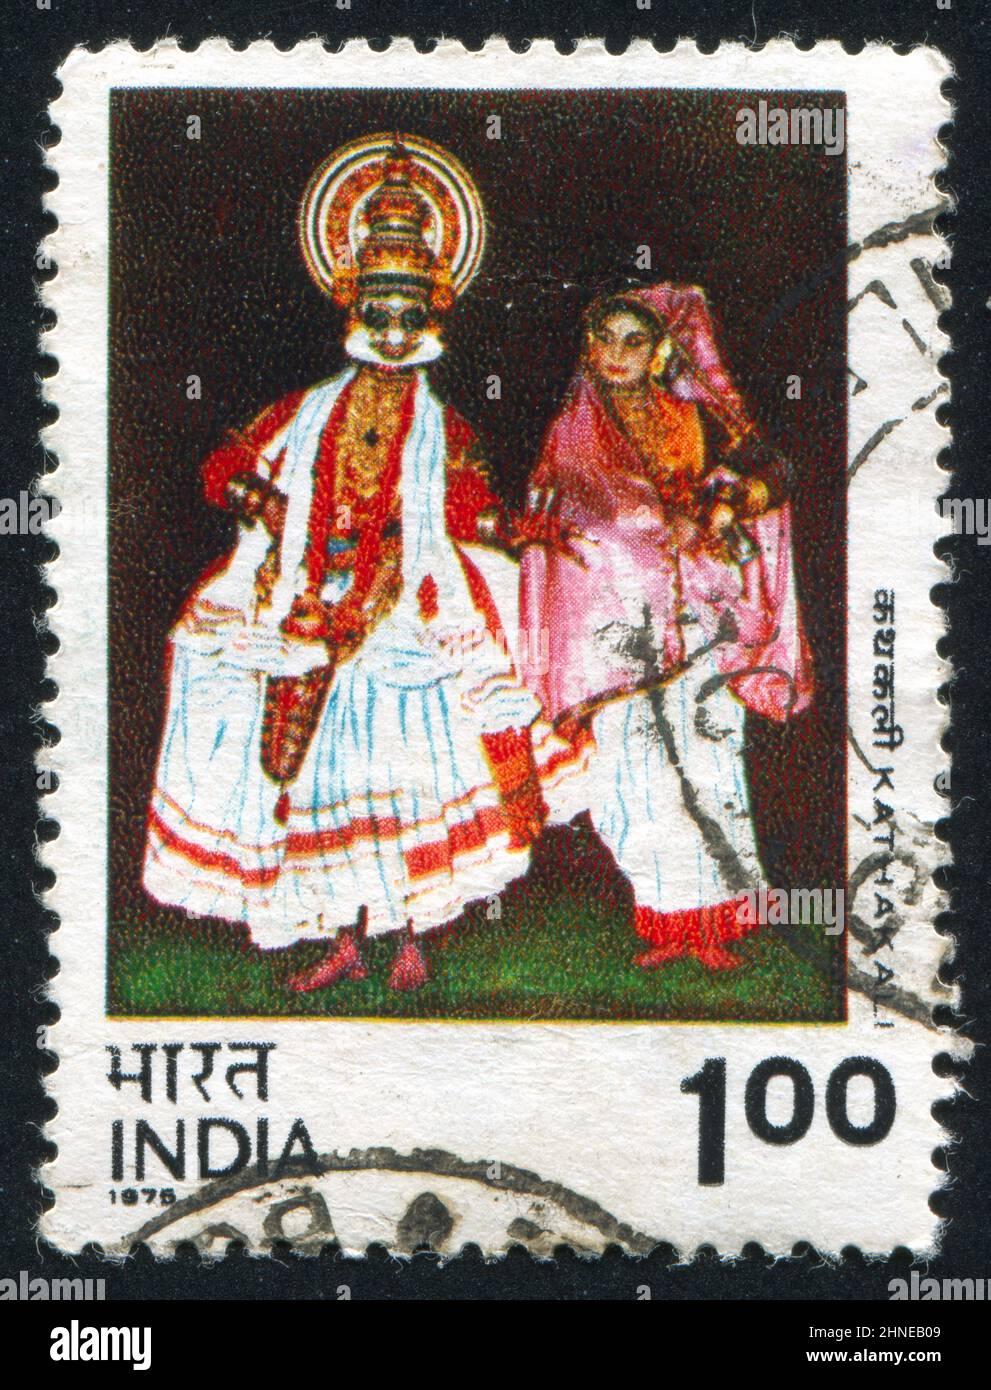 INDE - VERS 1975: Timbre imprimé par l'Inde, montre la danse Kathakali, vers 1975 Banque D'Images